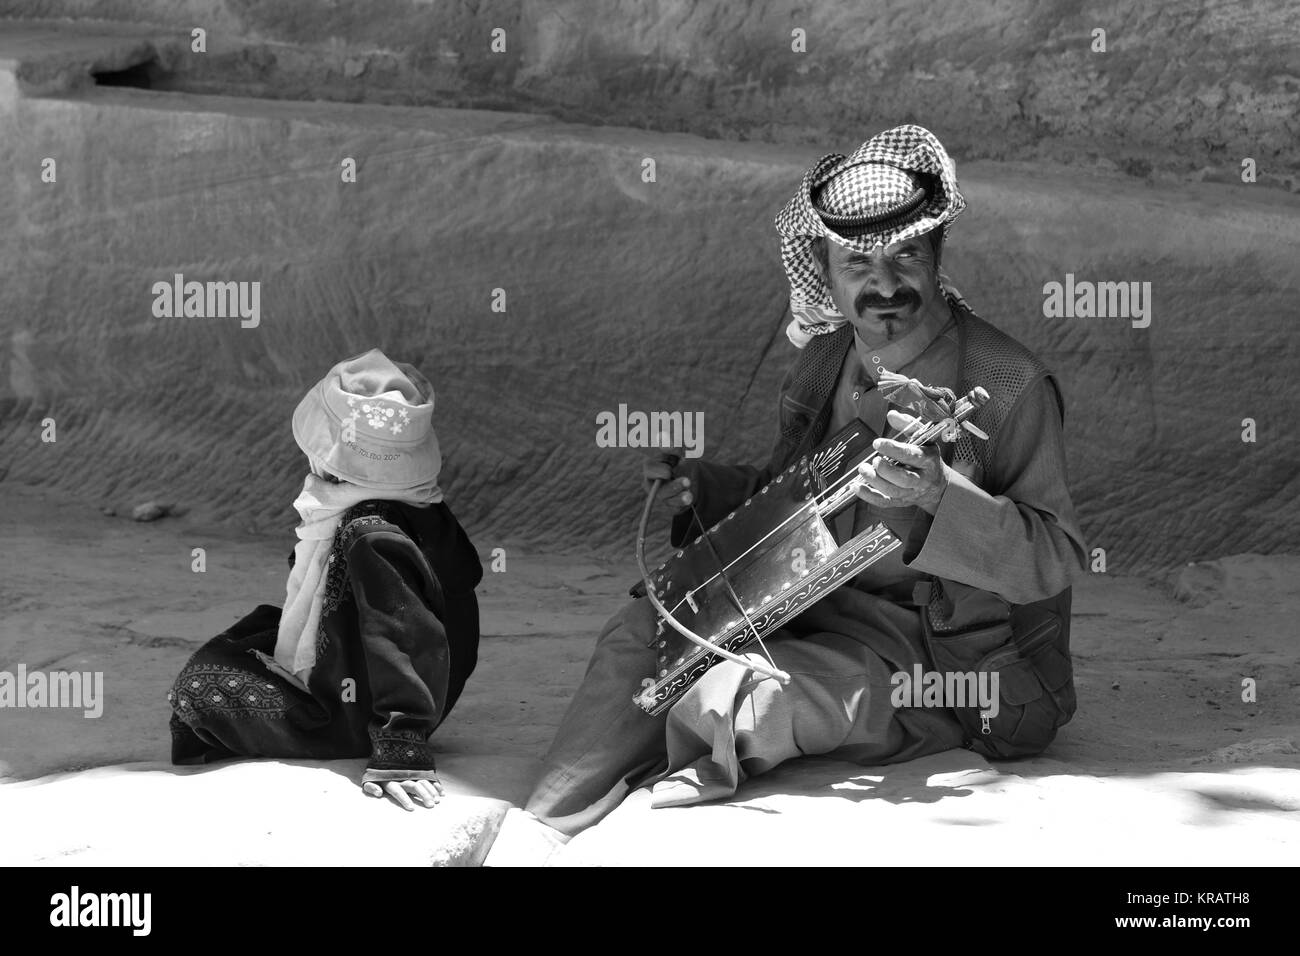 Rebab lettore beduino in Petra - 21/05/2017 - Giordania / Amman - Sguardi Aridi da Ali Raffaele Mataró girato nel maggio 2017 - arabo vestito tipico musicista Foto Stock